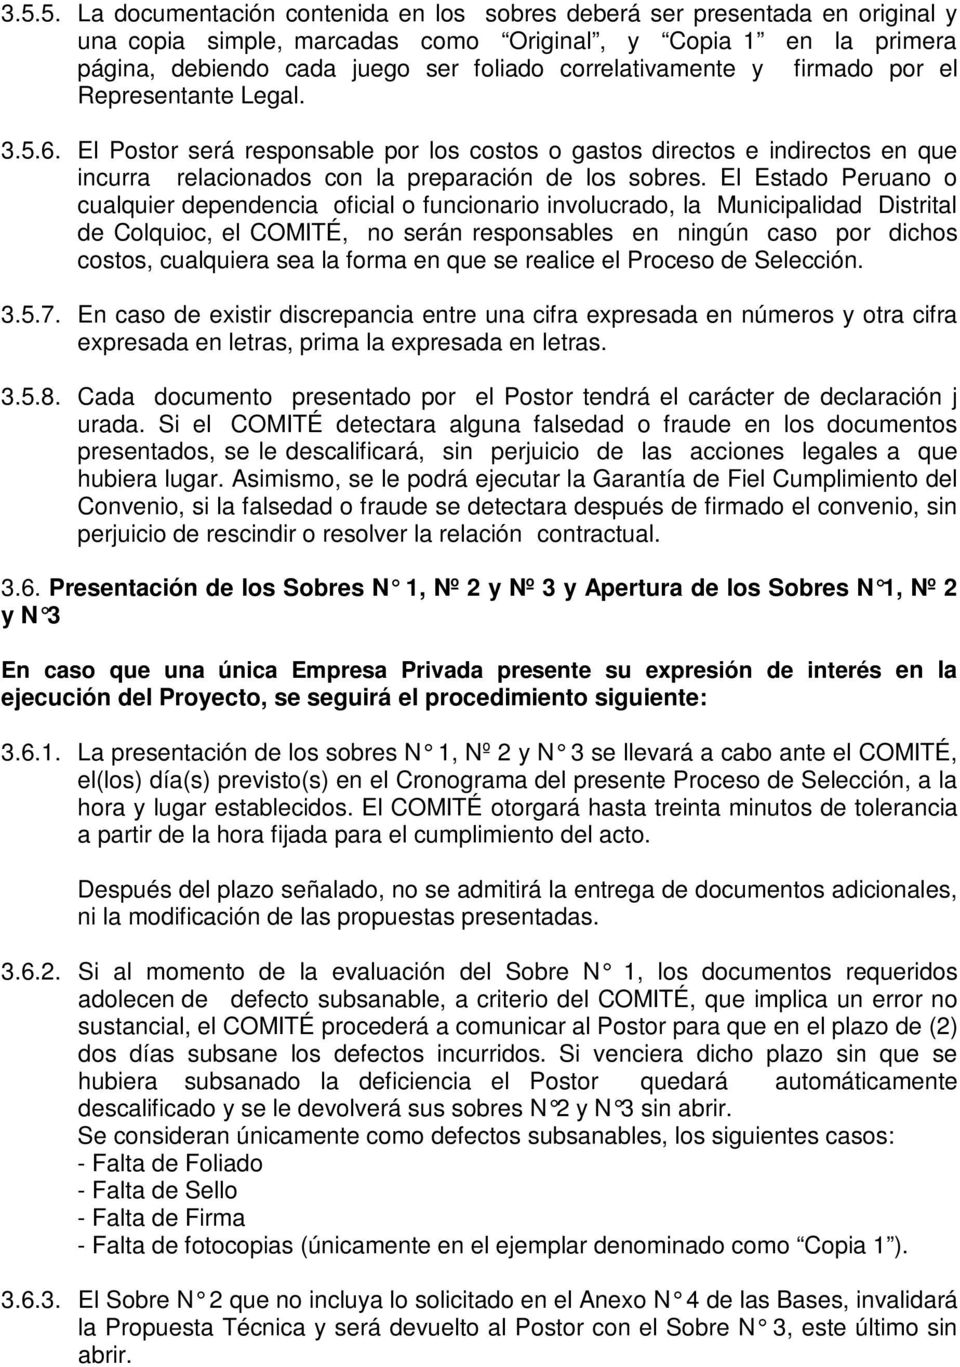 El Estado Peruano o cualquier dependencia oficial o funcionario involucrado, la Municipalidad Distrital de Colquioc, el COMITÉ, no serán responsables en ningún caso por dichos costos, cualquiera sea